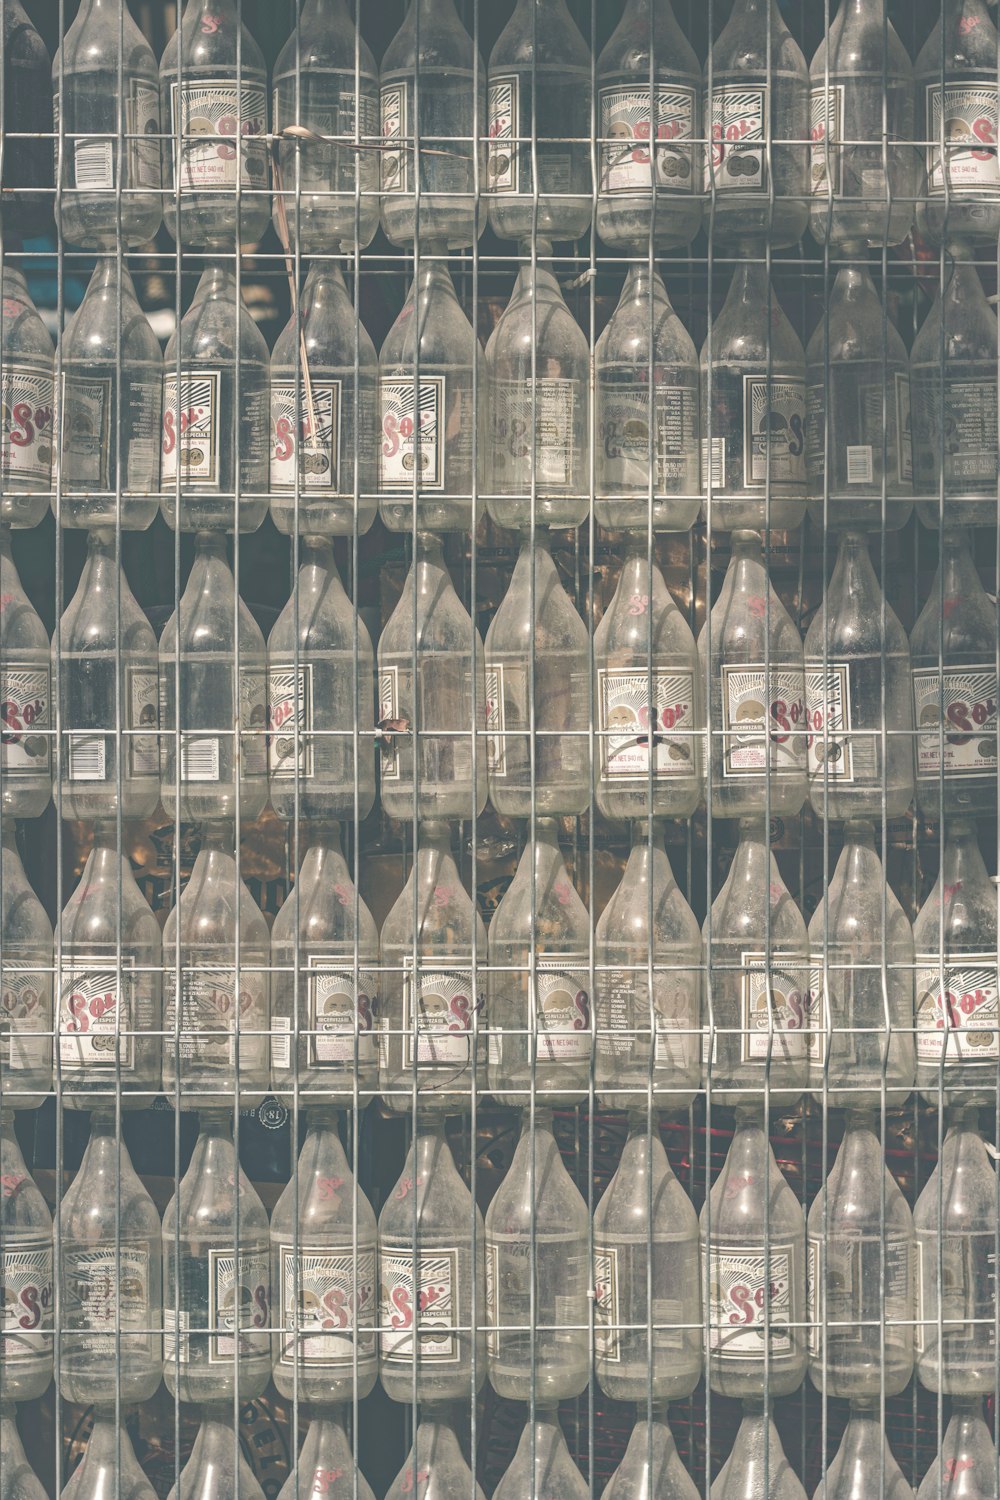 clear glass bottle lot